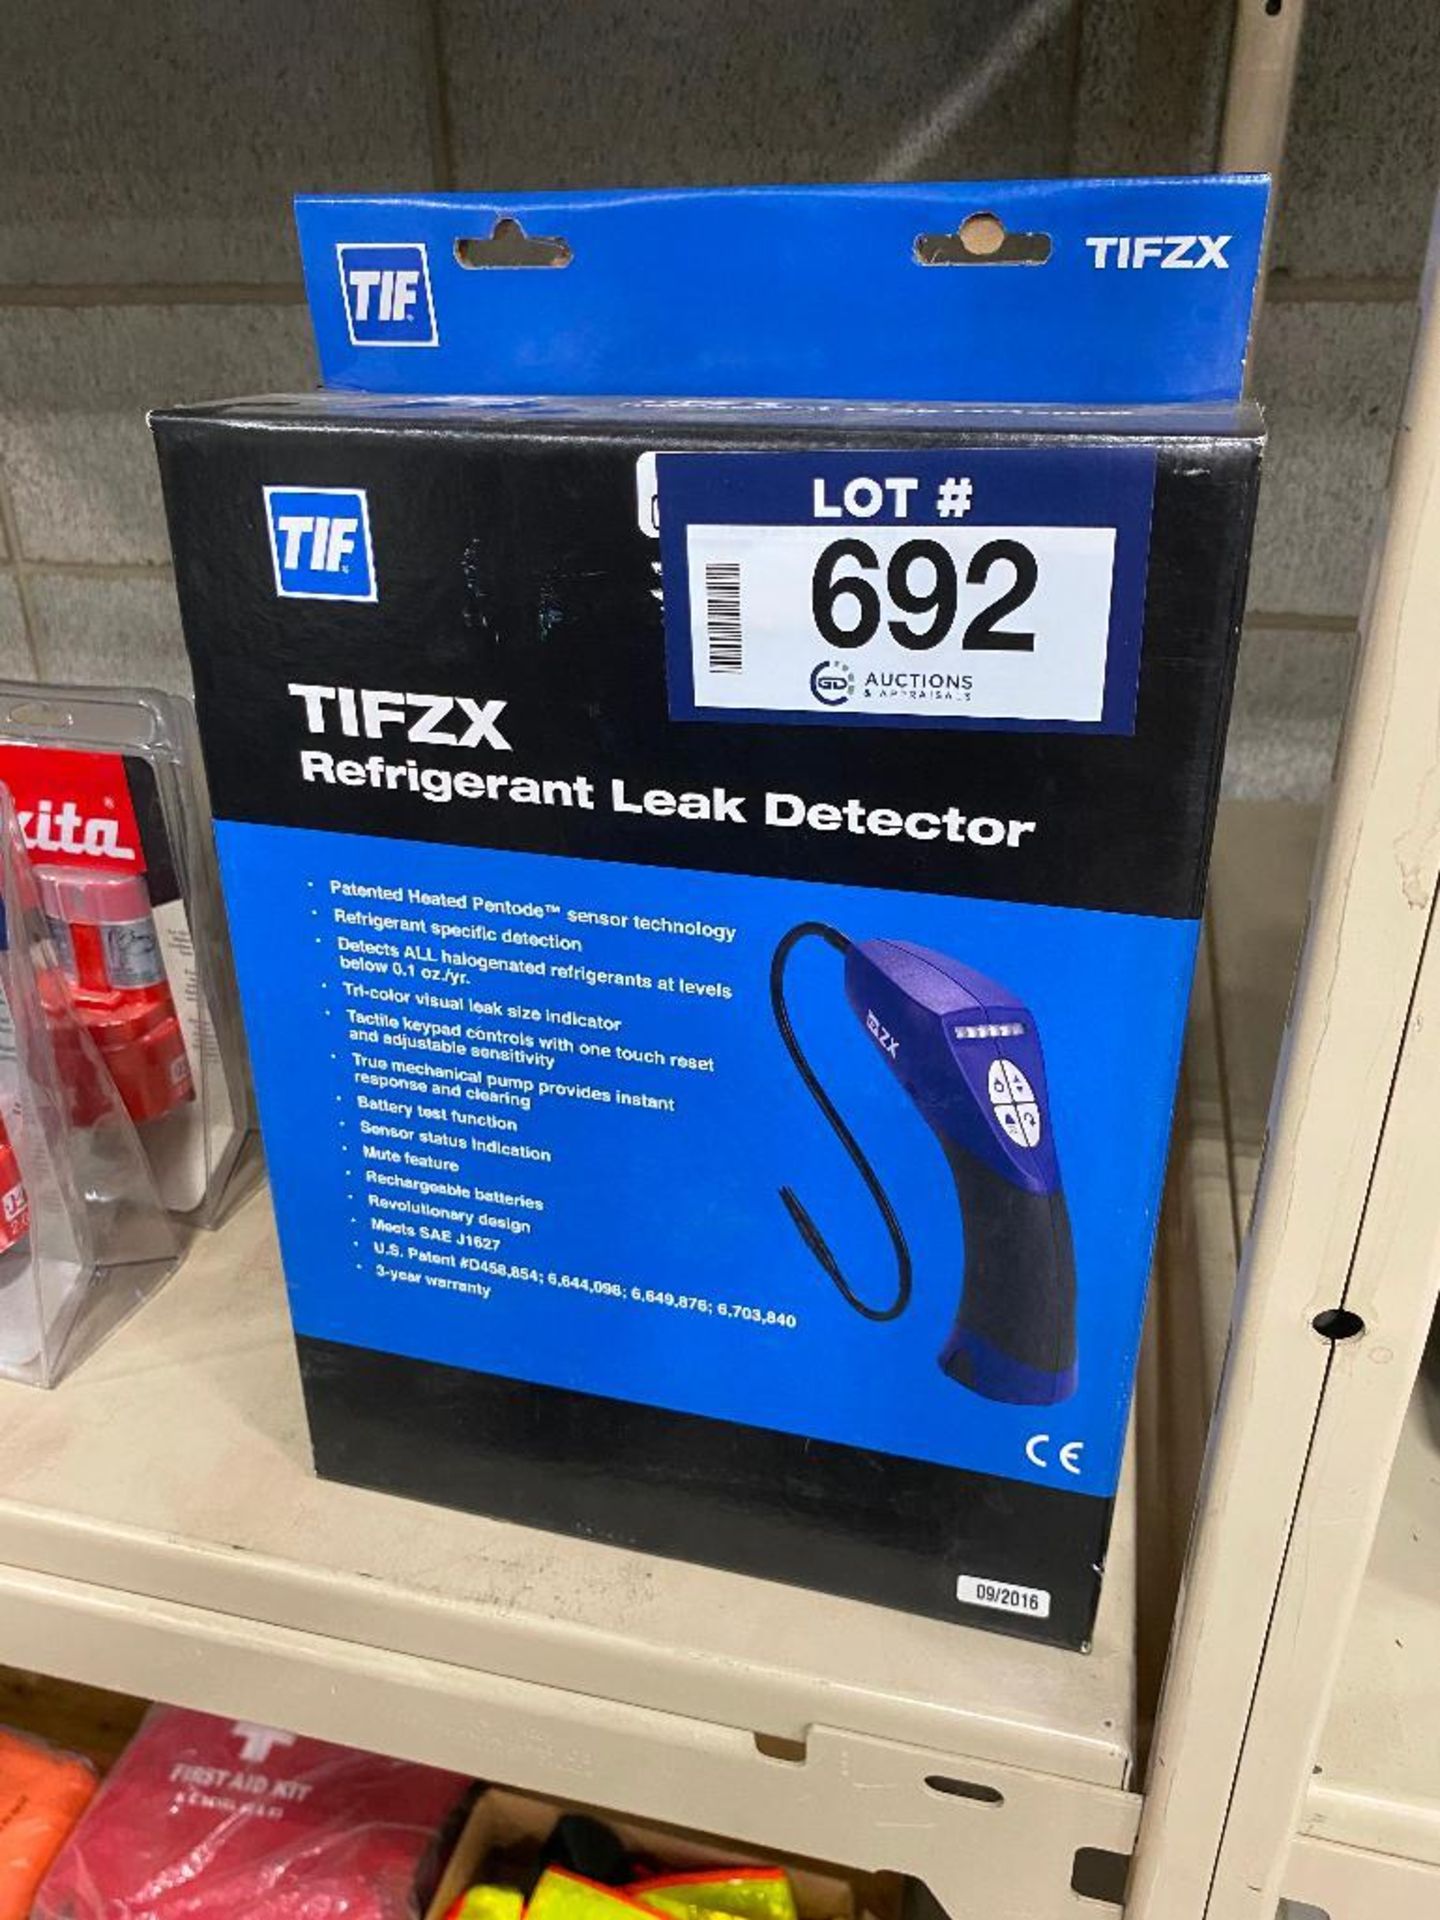 TIFZX Refrigerant Leak Detector - Image 2 of 3